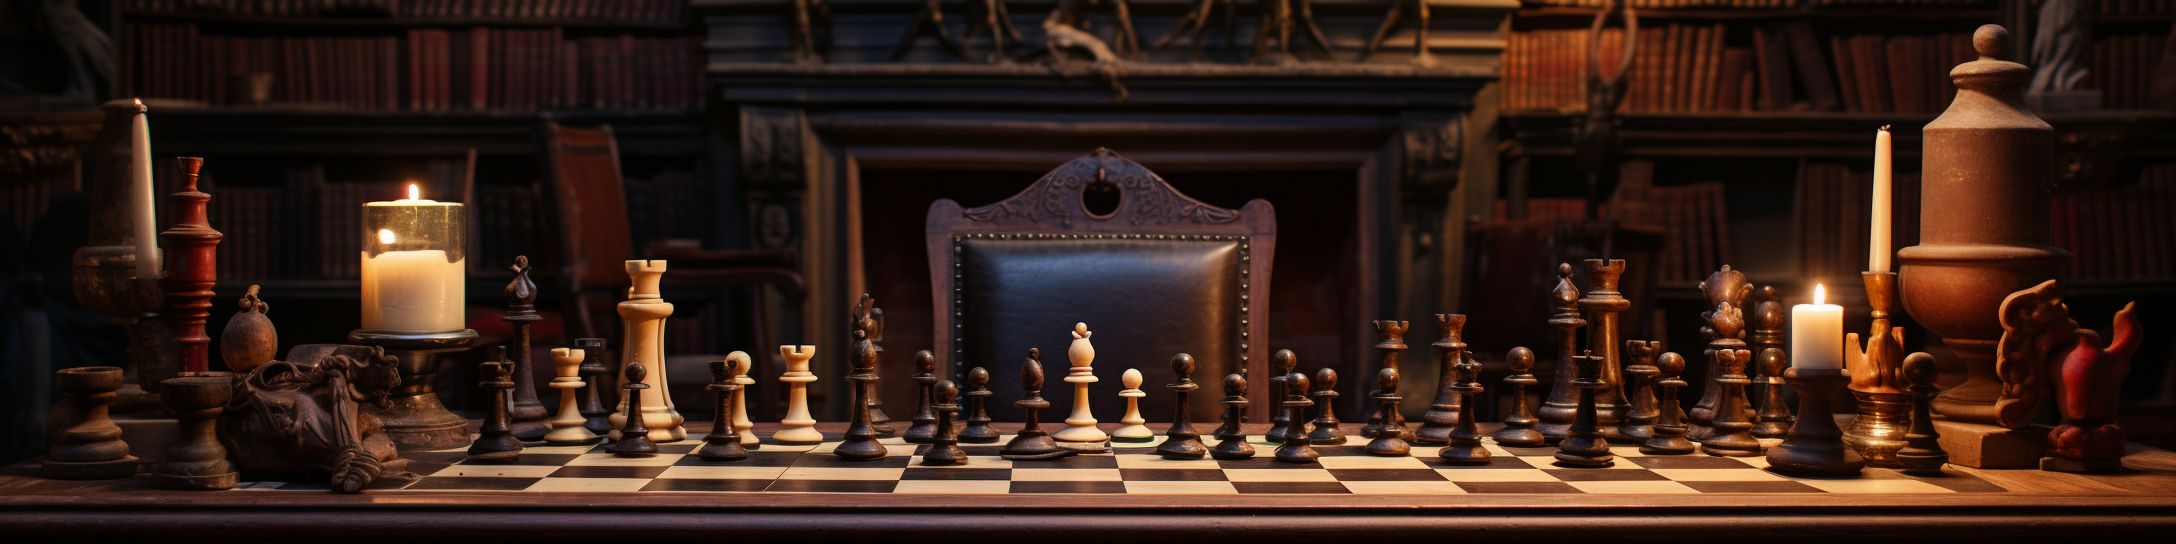 La standardisation des échecs au 19ème siècle